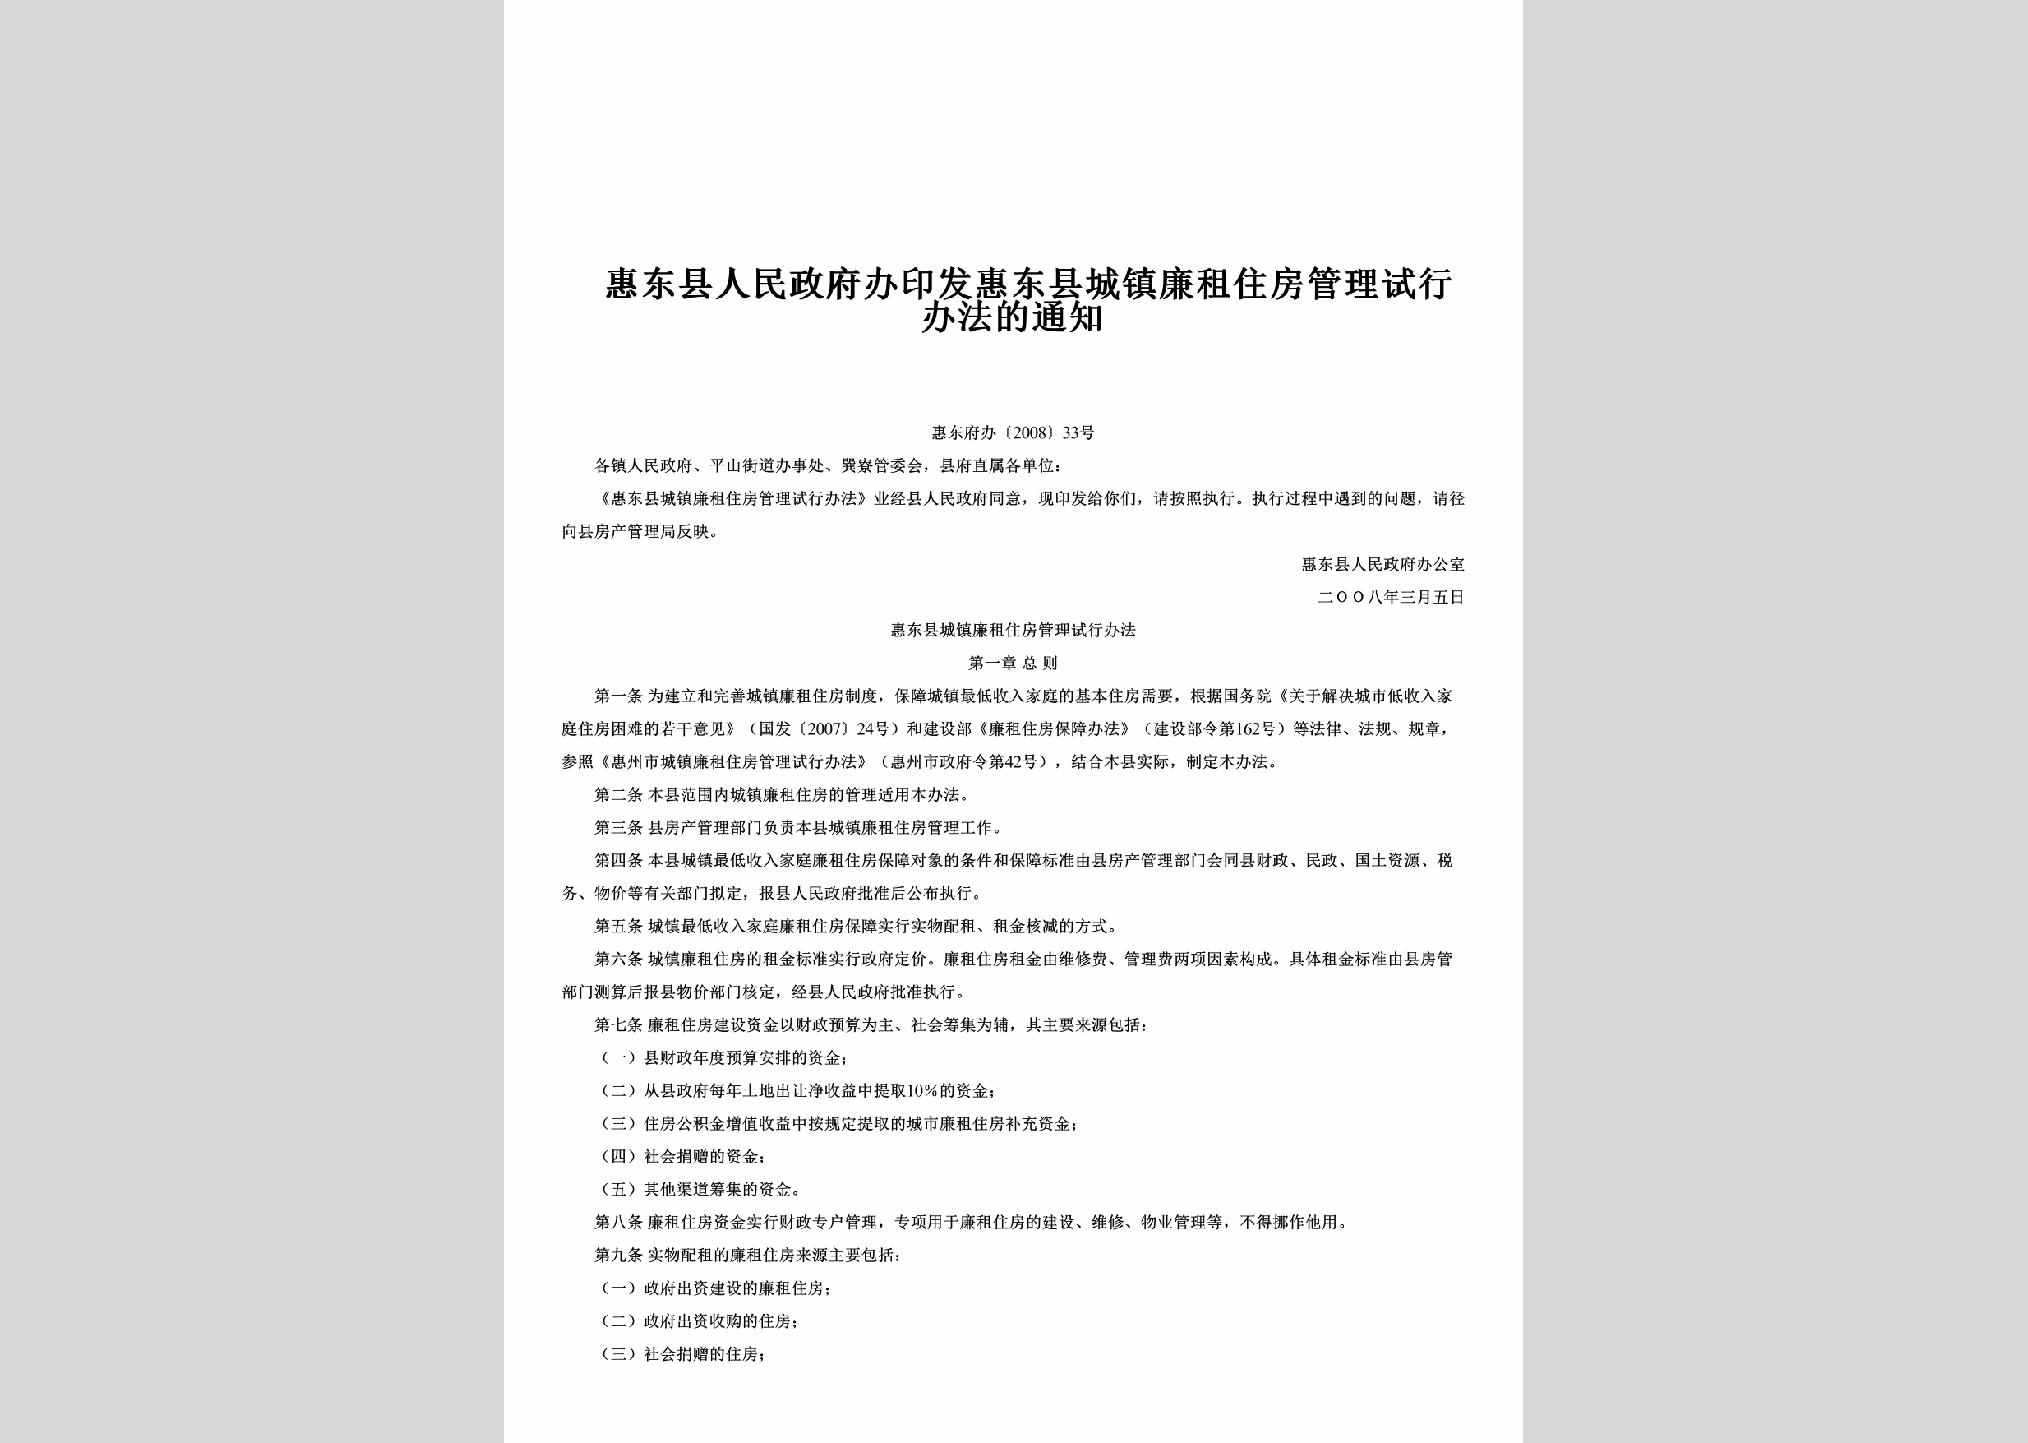 惠东府办[2008]33号：印发惠东县城镇廉租住房管理试行办法的通知